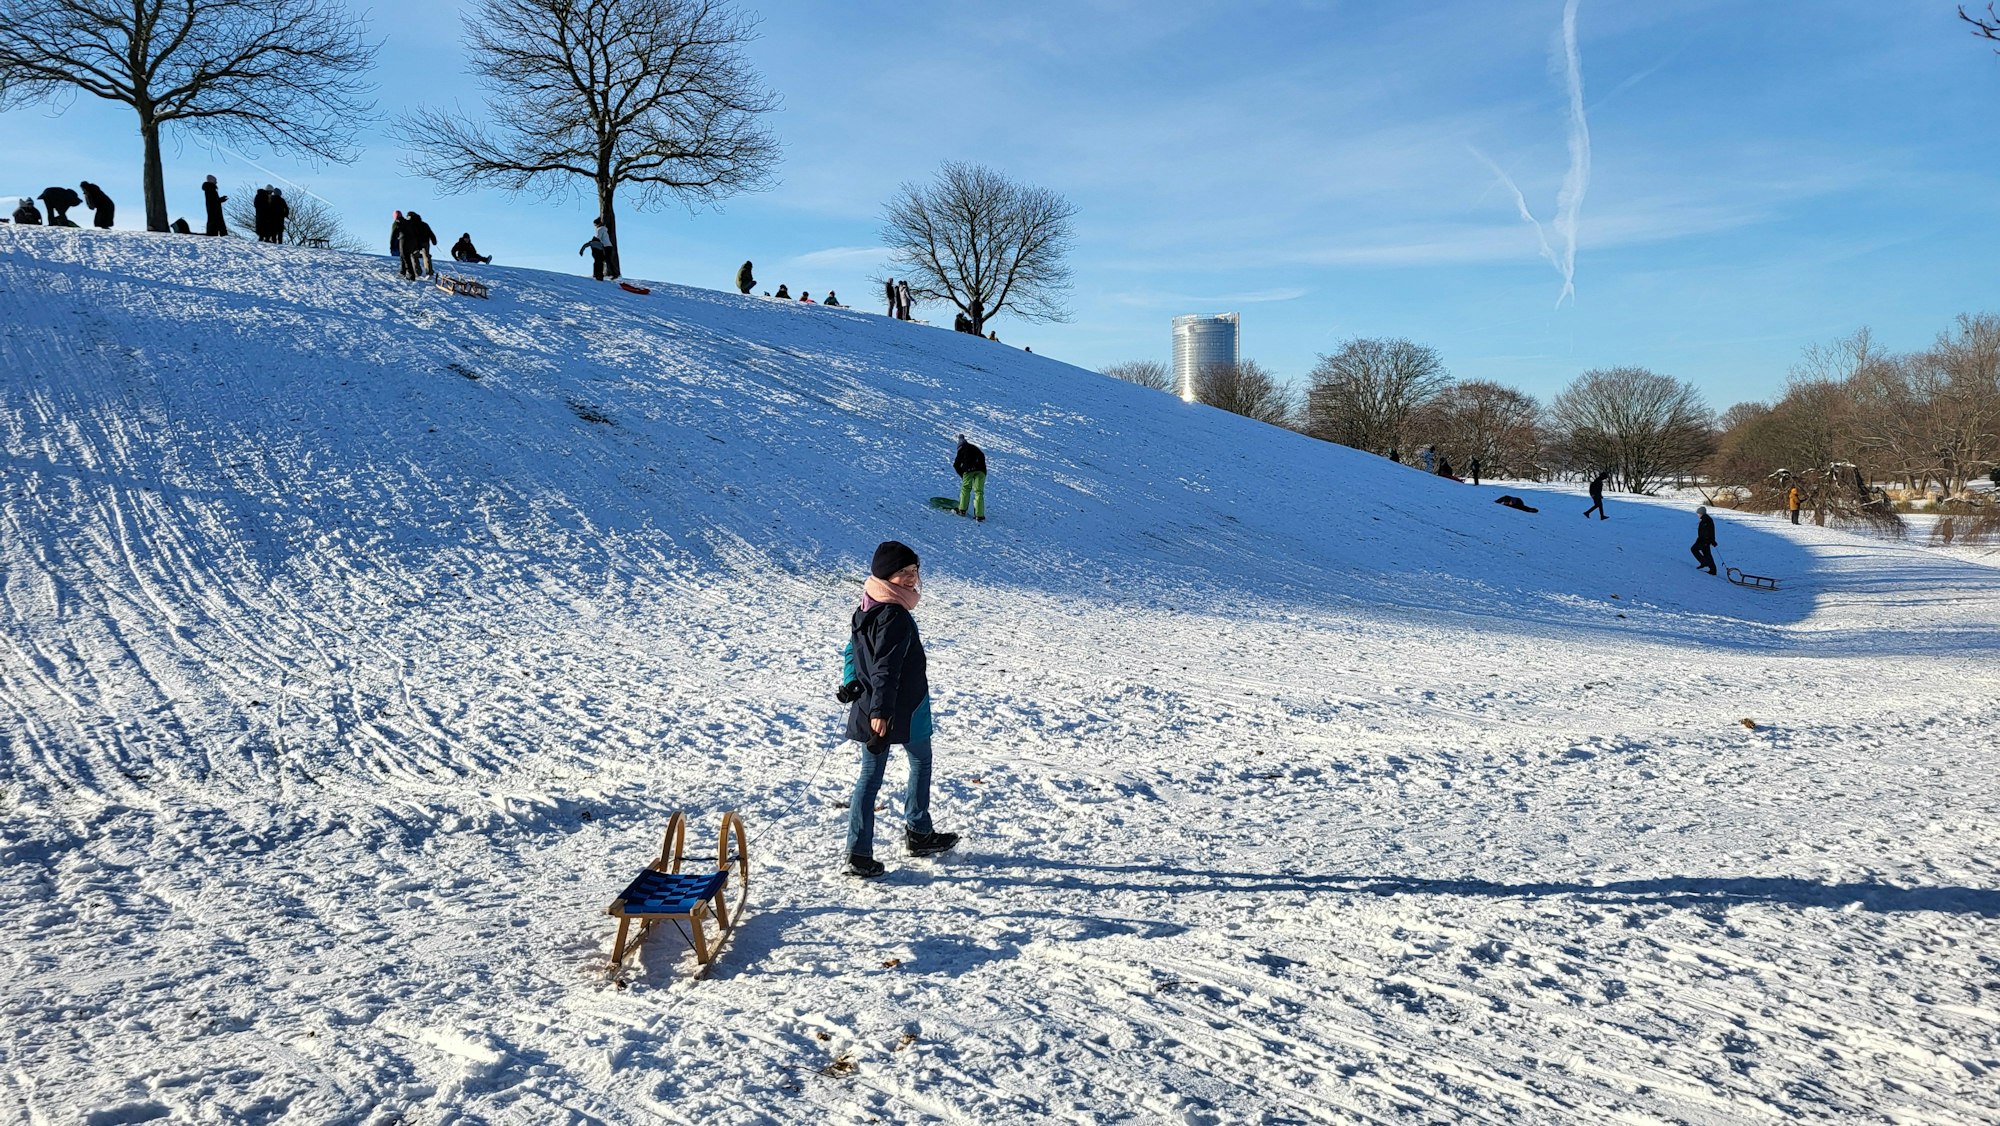 Hunderte Menschen genießen am Samstag (20. Januar) das Winterwetter in der Bonner Rheinaue.